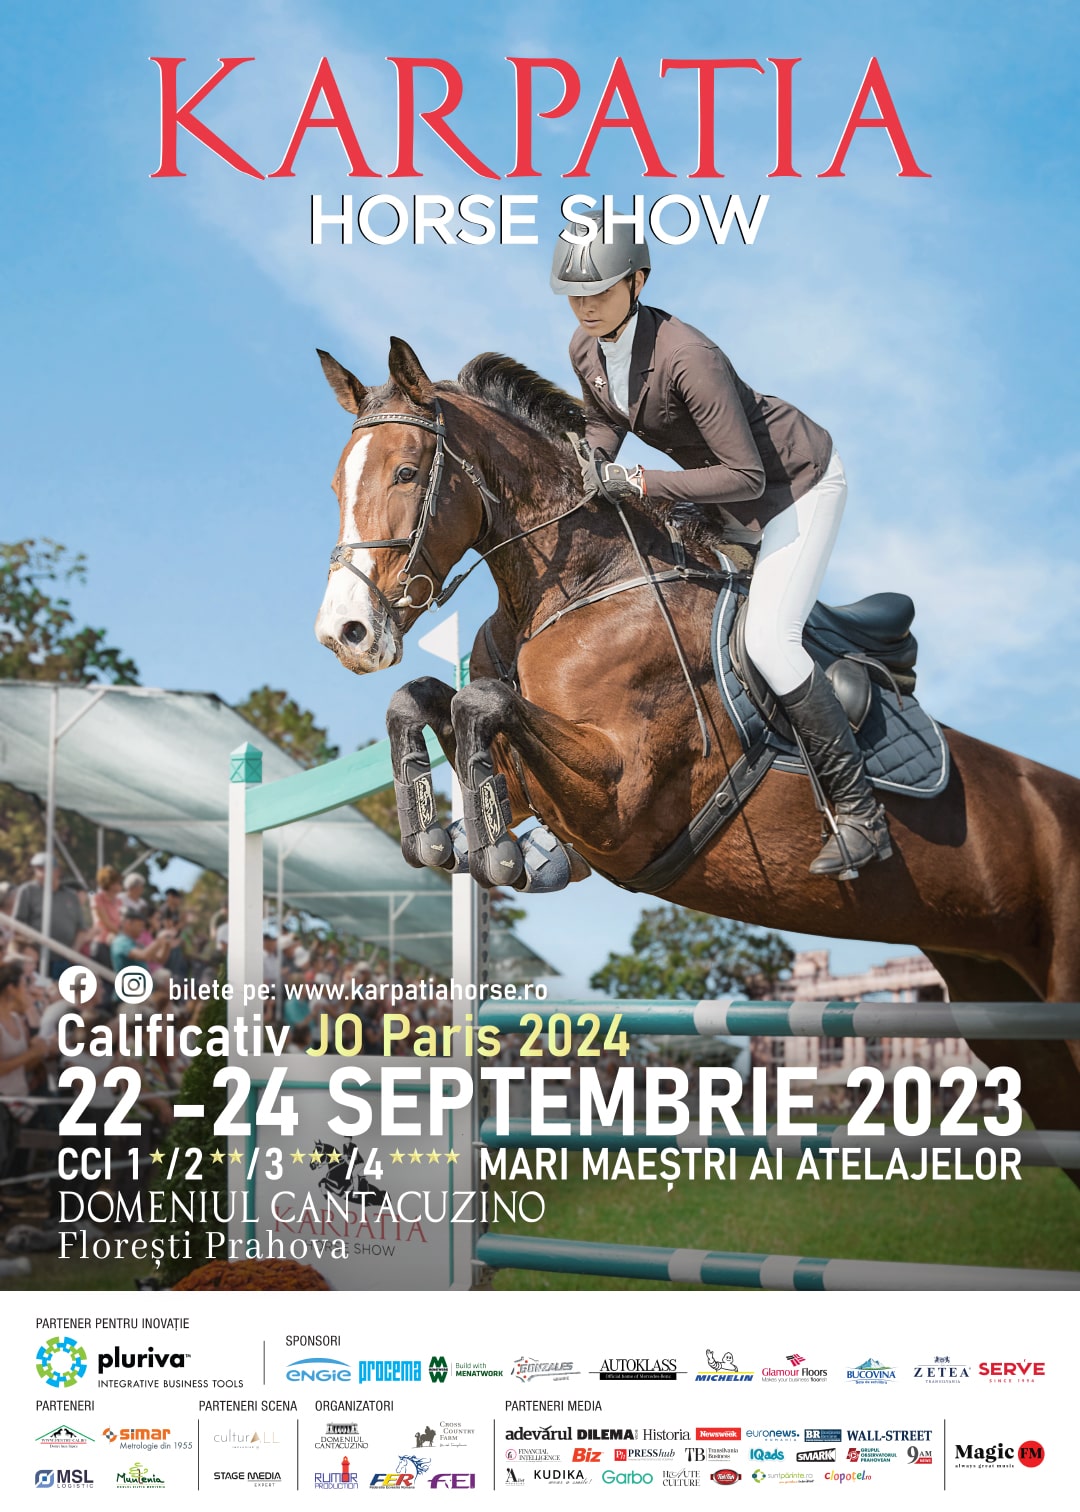 Karpatia Horse Show 2023